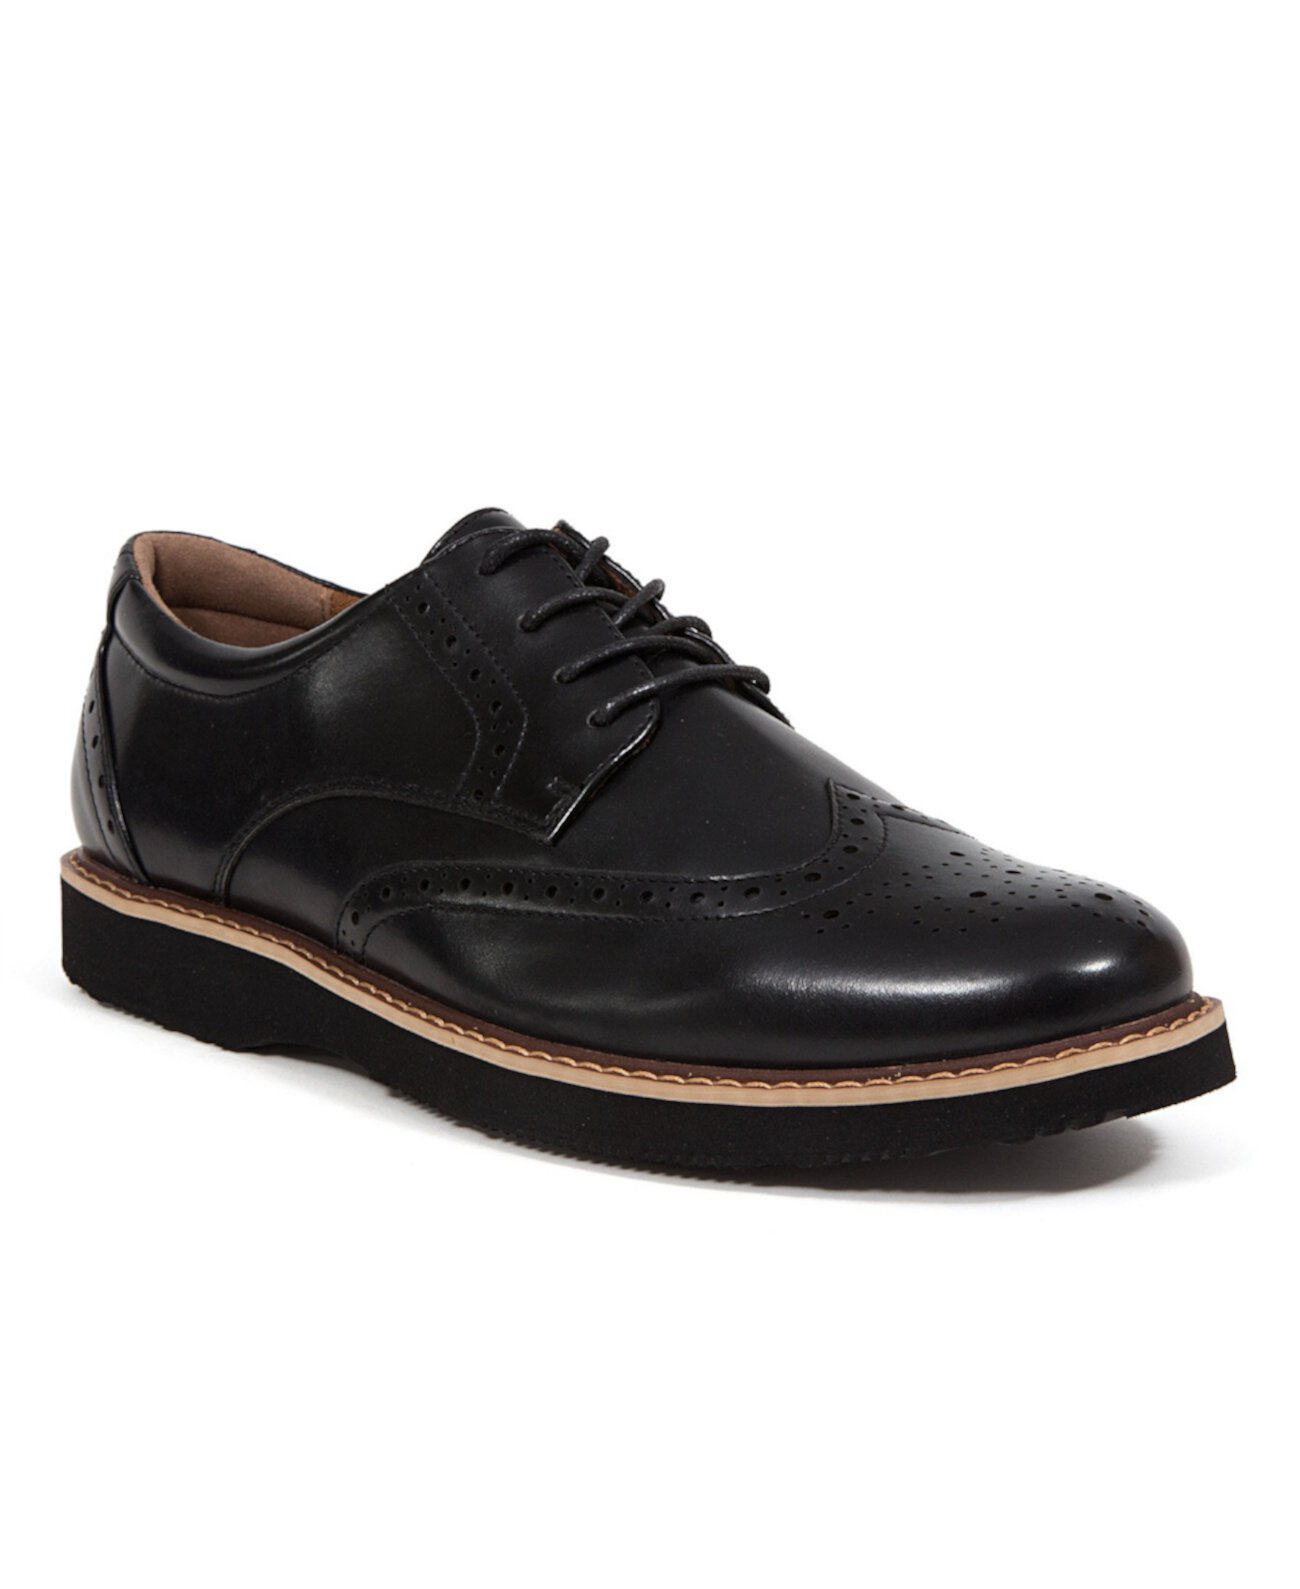 Мужская обувь Walkmaster Wingtip Oxford1 S.U.P.R.O 2.0 Classic Comfort Оксфордская обувь Deer Stags